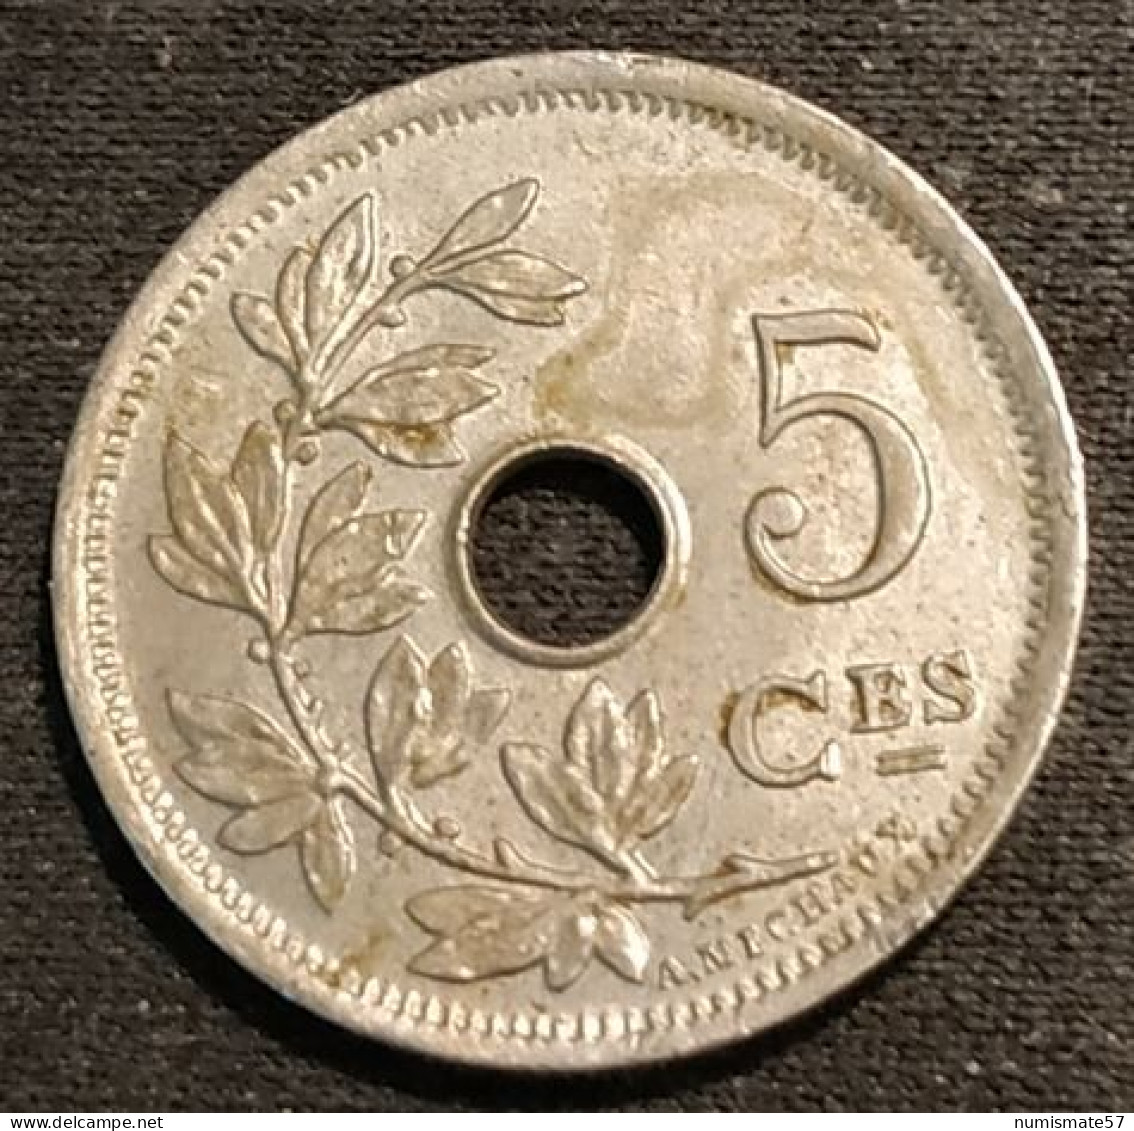 BELGIQUE - BELGIUM - Très Jolie 5 CENTIMES 1902 - Légende FR - Petite Date - Léopold II - Type Michaux - KM 47 - 5 Cent